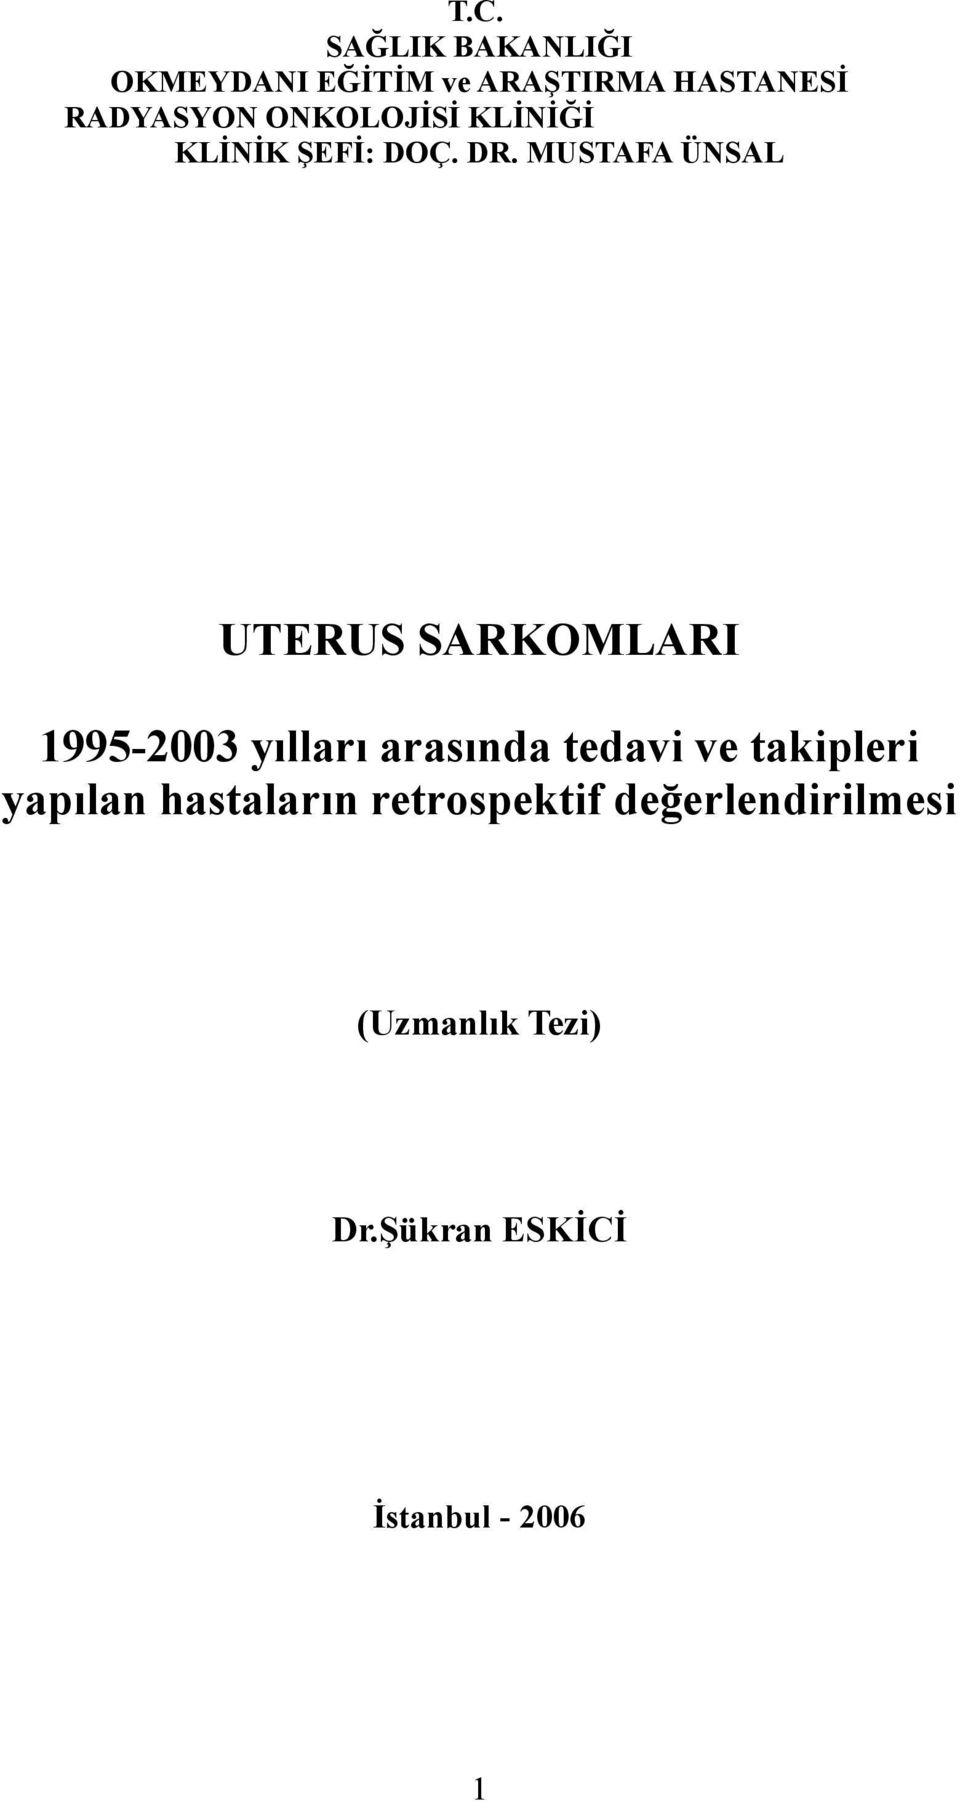 MUSTAFA ÜNSAL UTERUS SARKOMLARI 1995-2003 yılları arasında tedavi ve